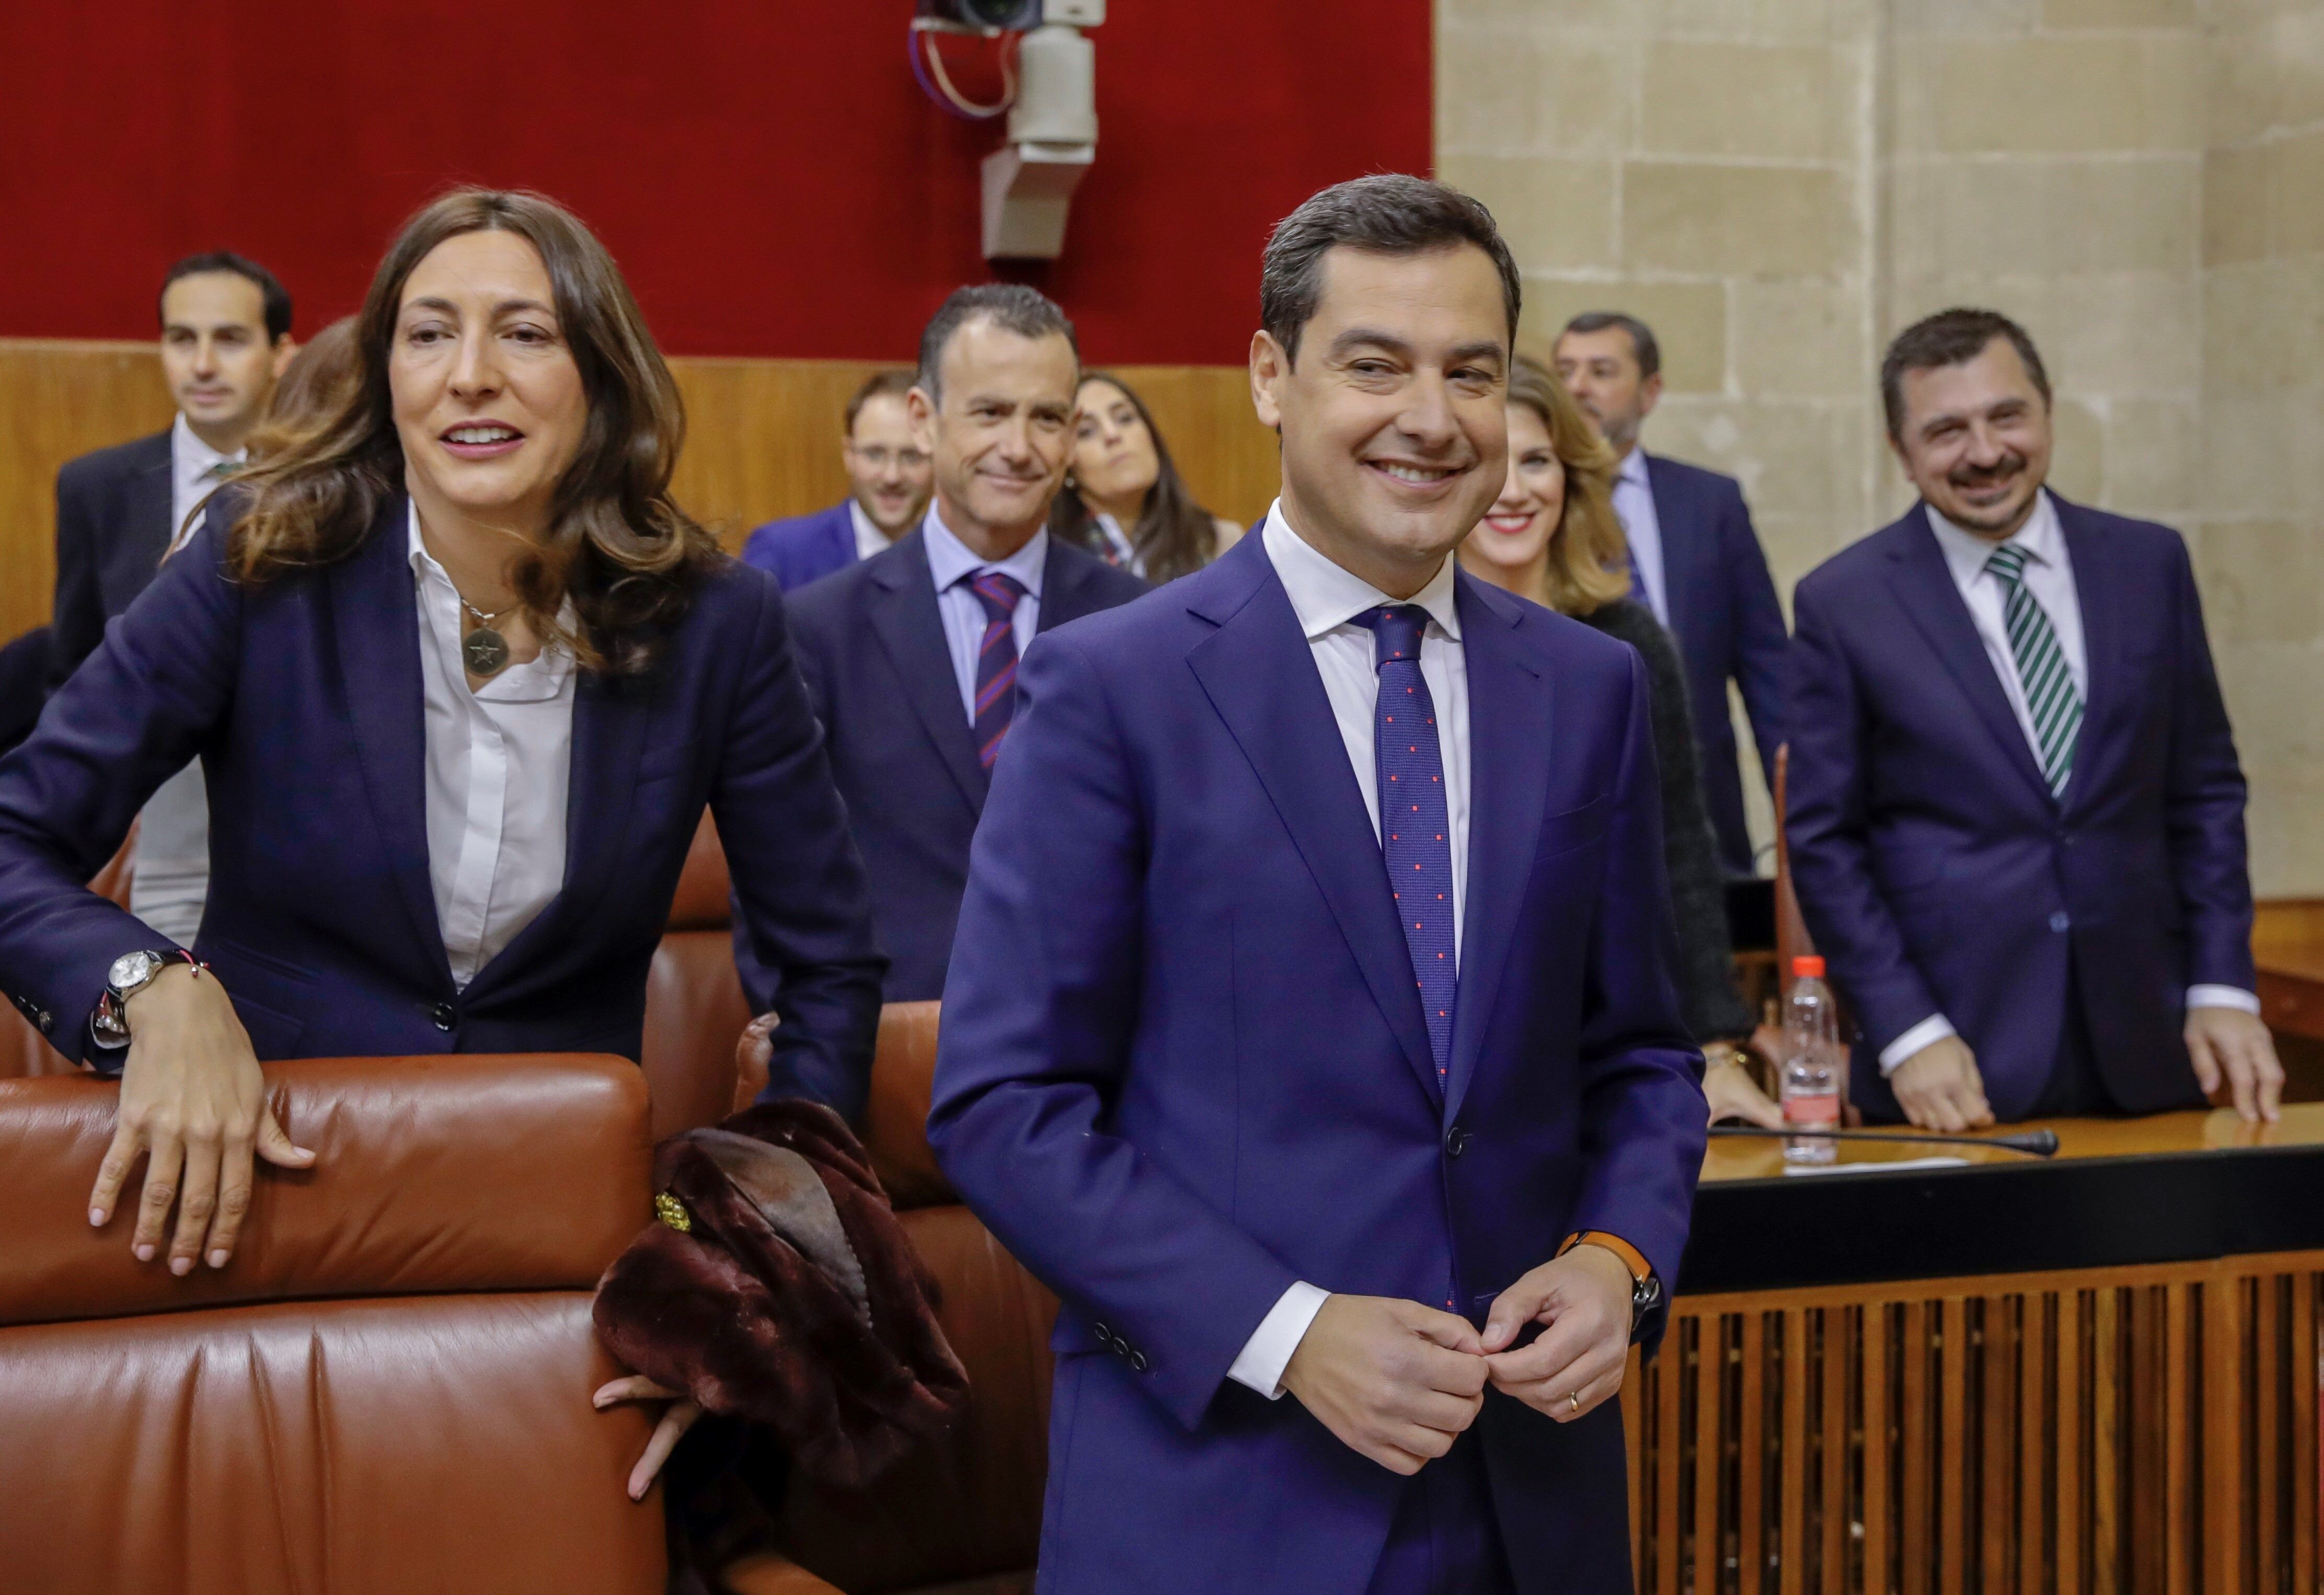 Moreno promet combatre "privilegis" als independentistes des de la Junta d'Andalusia